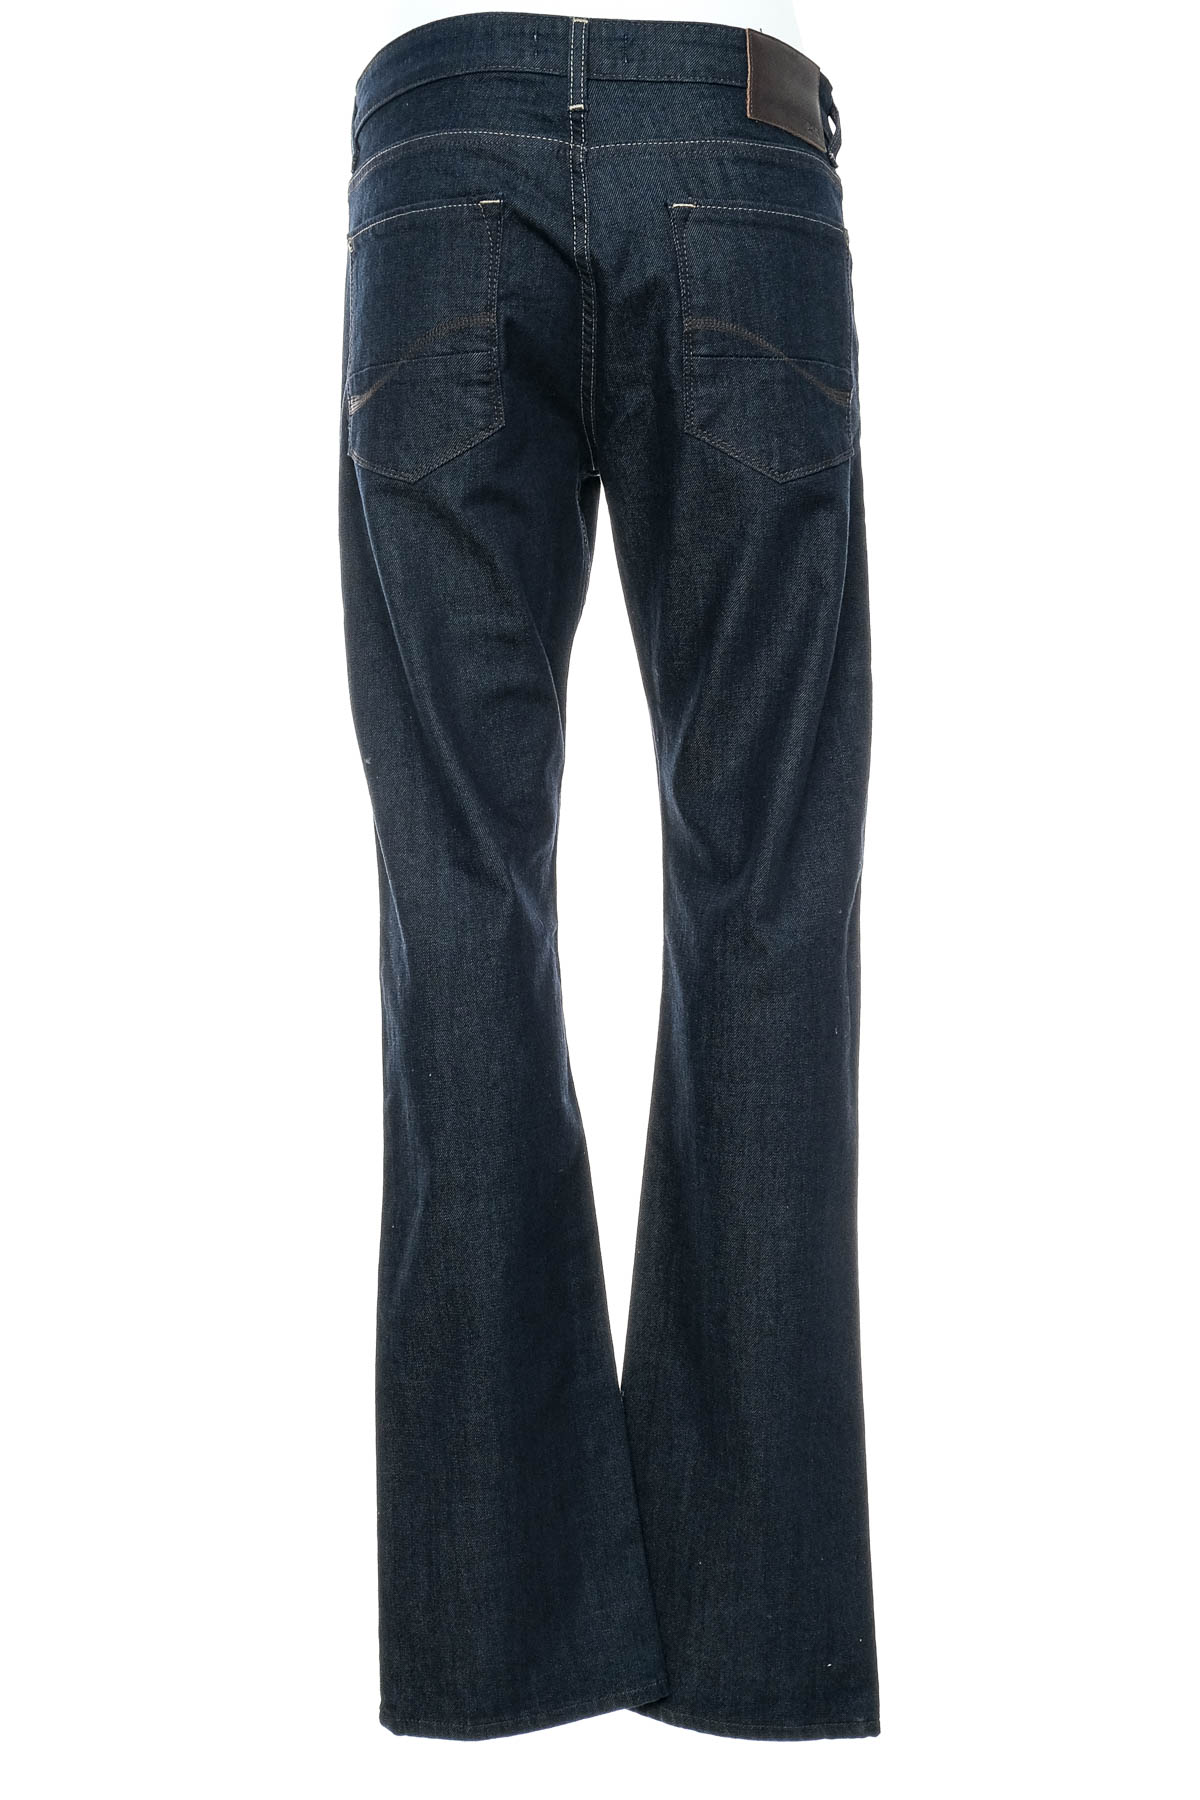 Jeans pentru bărbăți - Celio* - 1